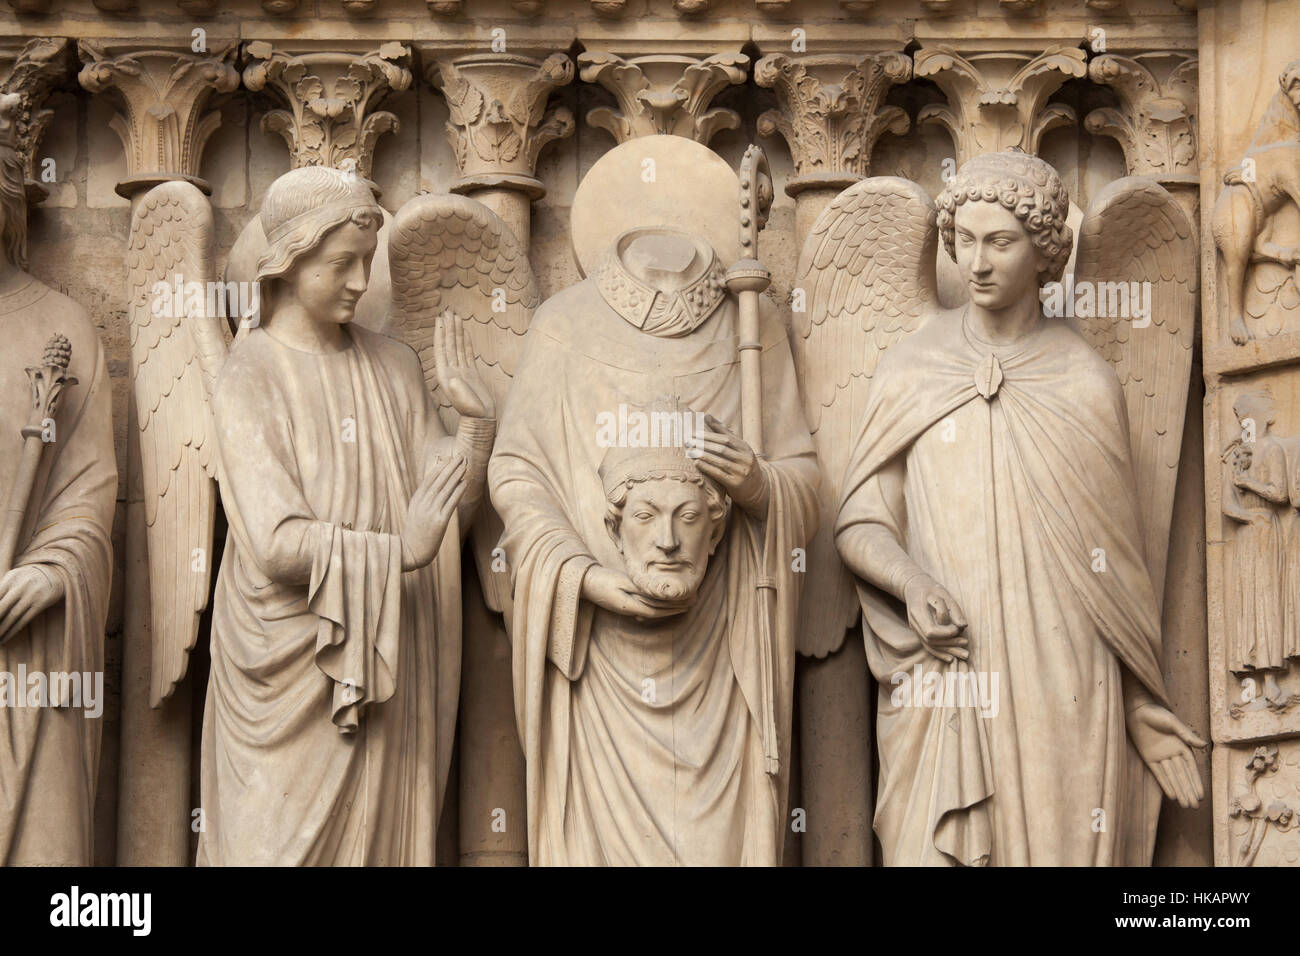 Saint-Denis (Dionysius) hält er den Kopf und von Engeln umgeben. Neo-gotische Statue an der Hauptfassade der Kathedrale Notre-Dame (Notre-Dame de Paris) in Paris, Frankreich. Beschädigte gotische Statuen an der Hauptfassade wurden in den 1840er Jahren von französischen Architekten Eugene Viollet-le-Duc und Jean-Baptiste Lassus restauriert. Stockfoto